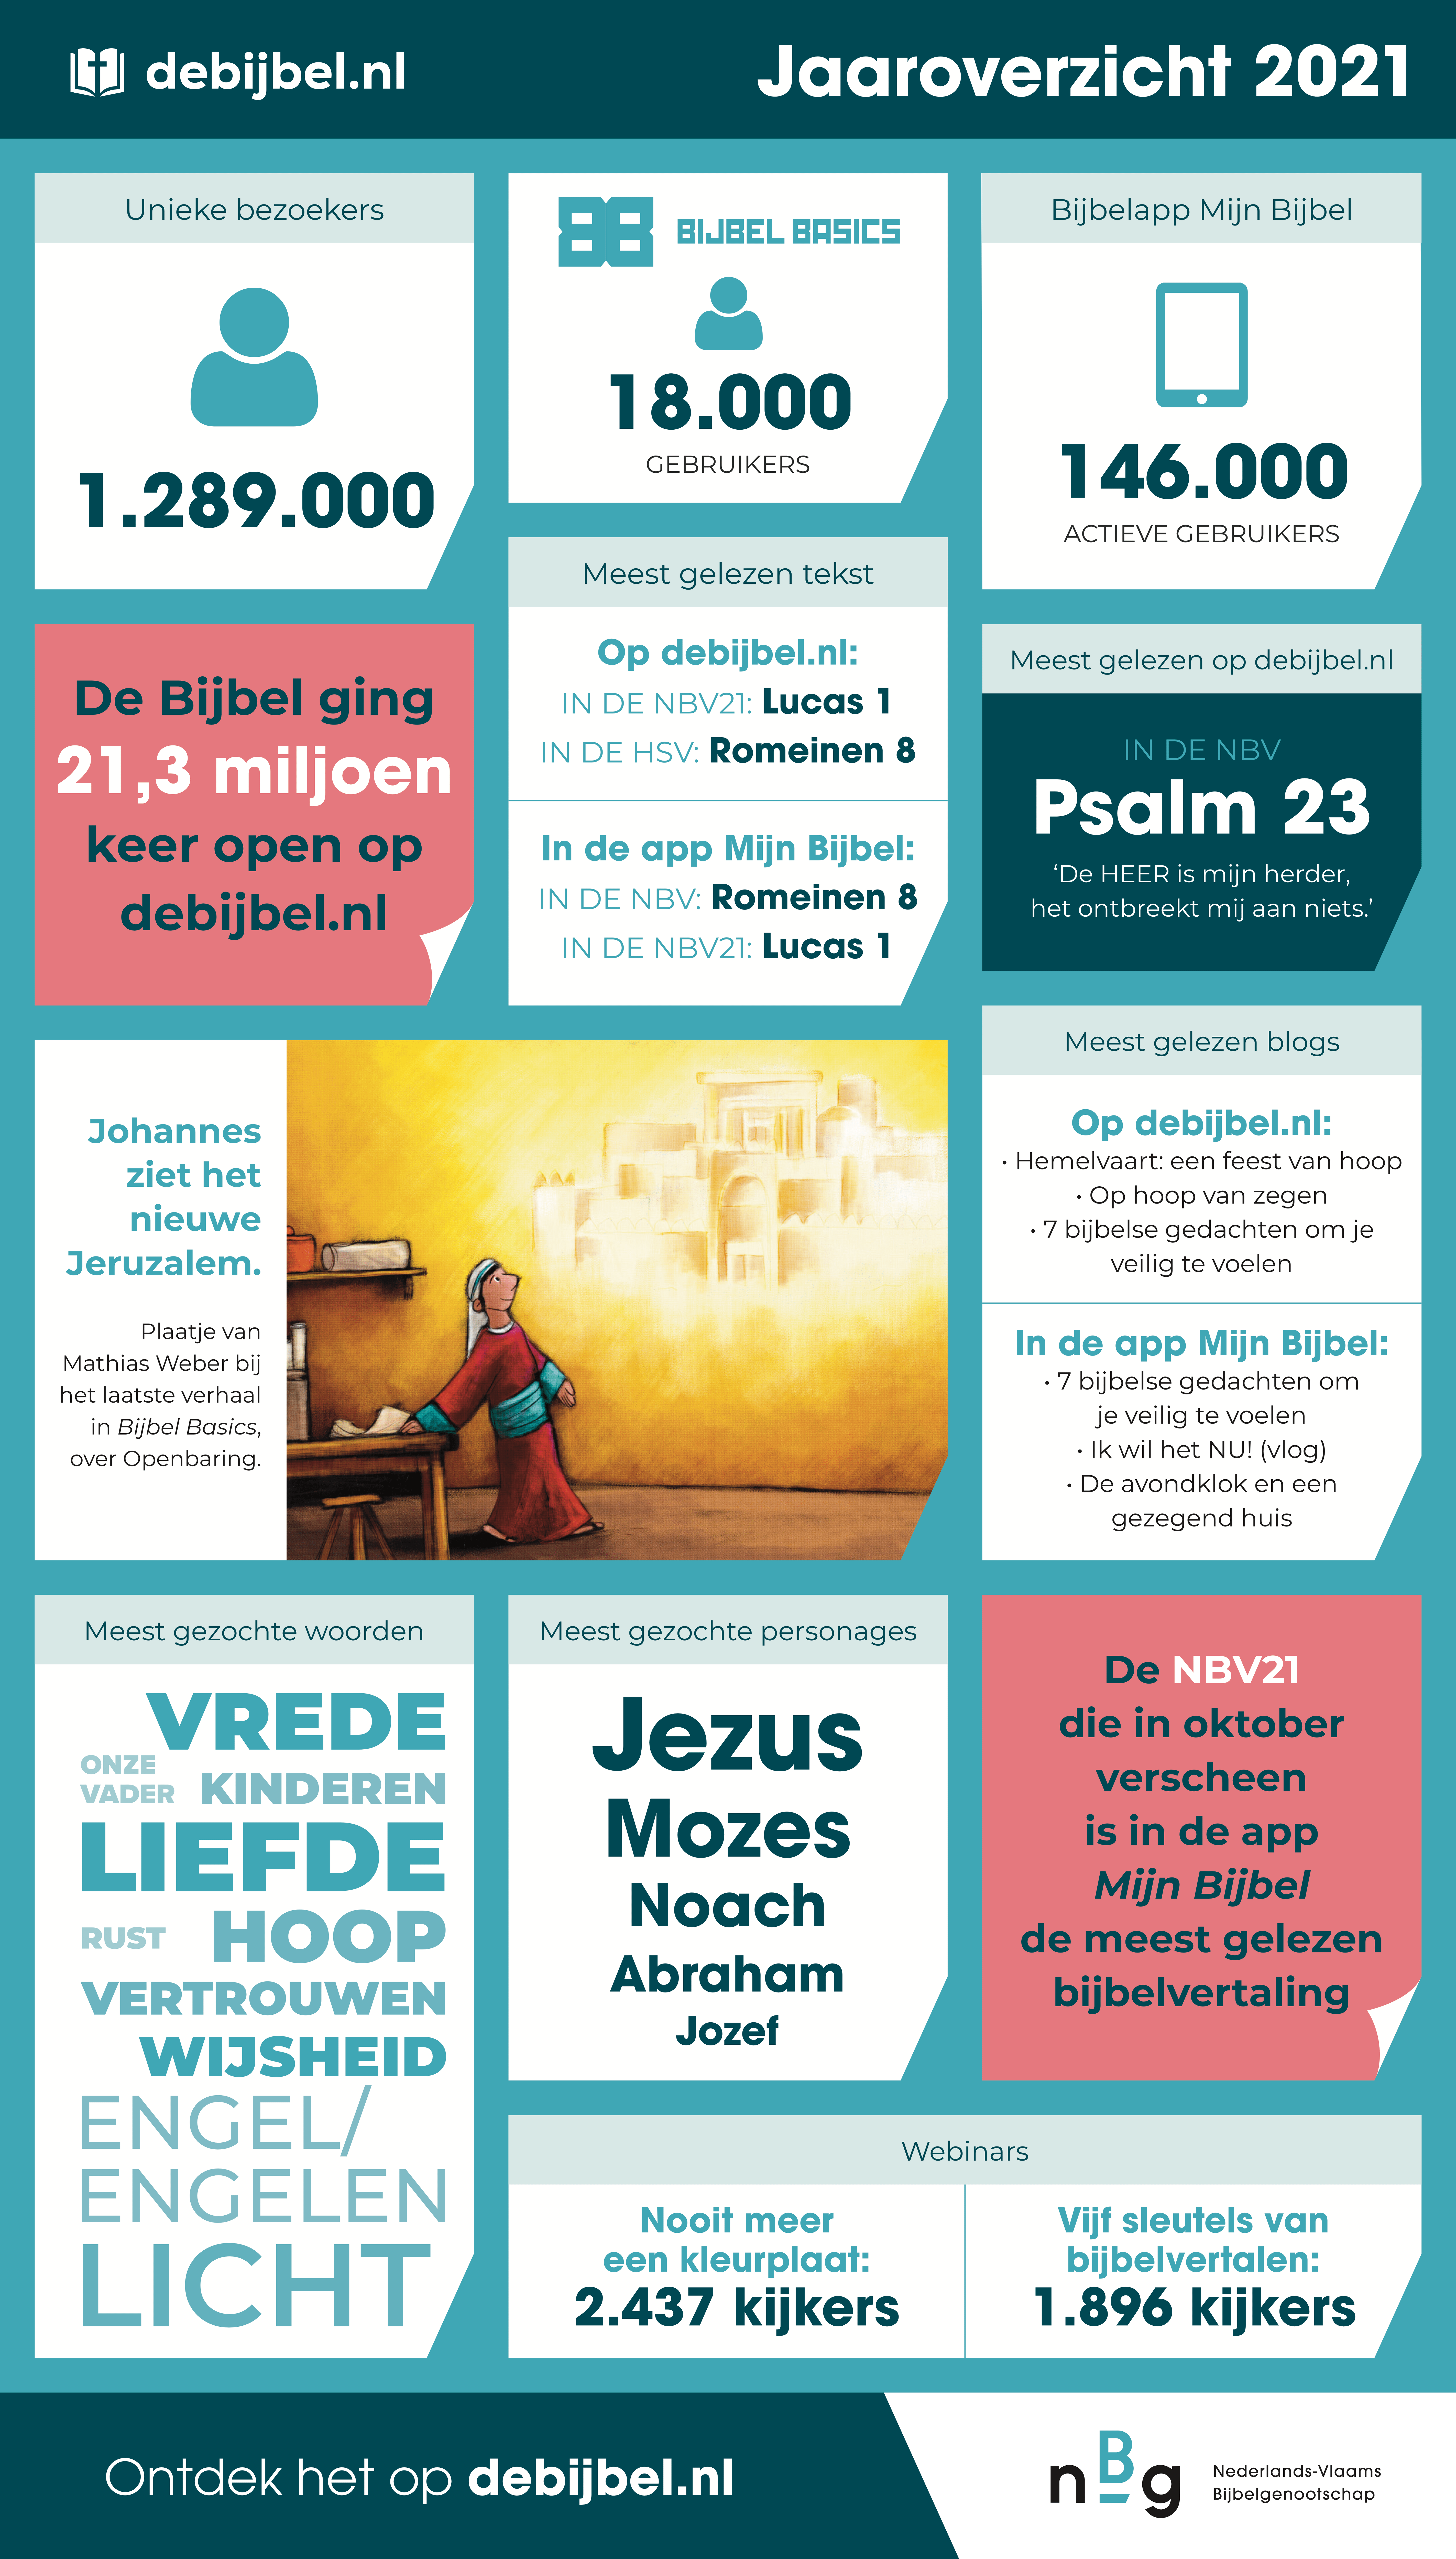 Jaaroverzicht debijbel.nl 2021